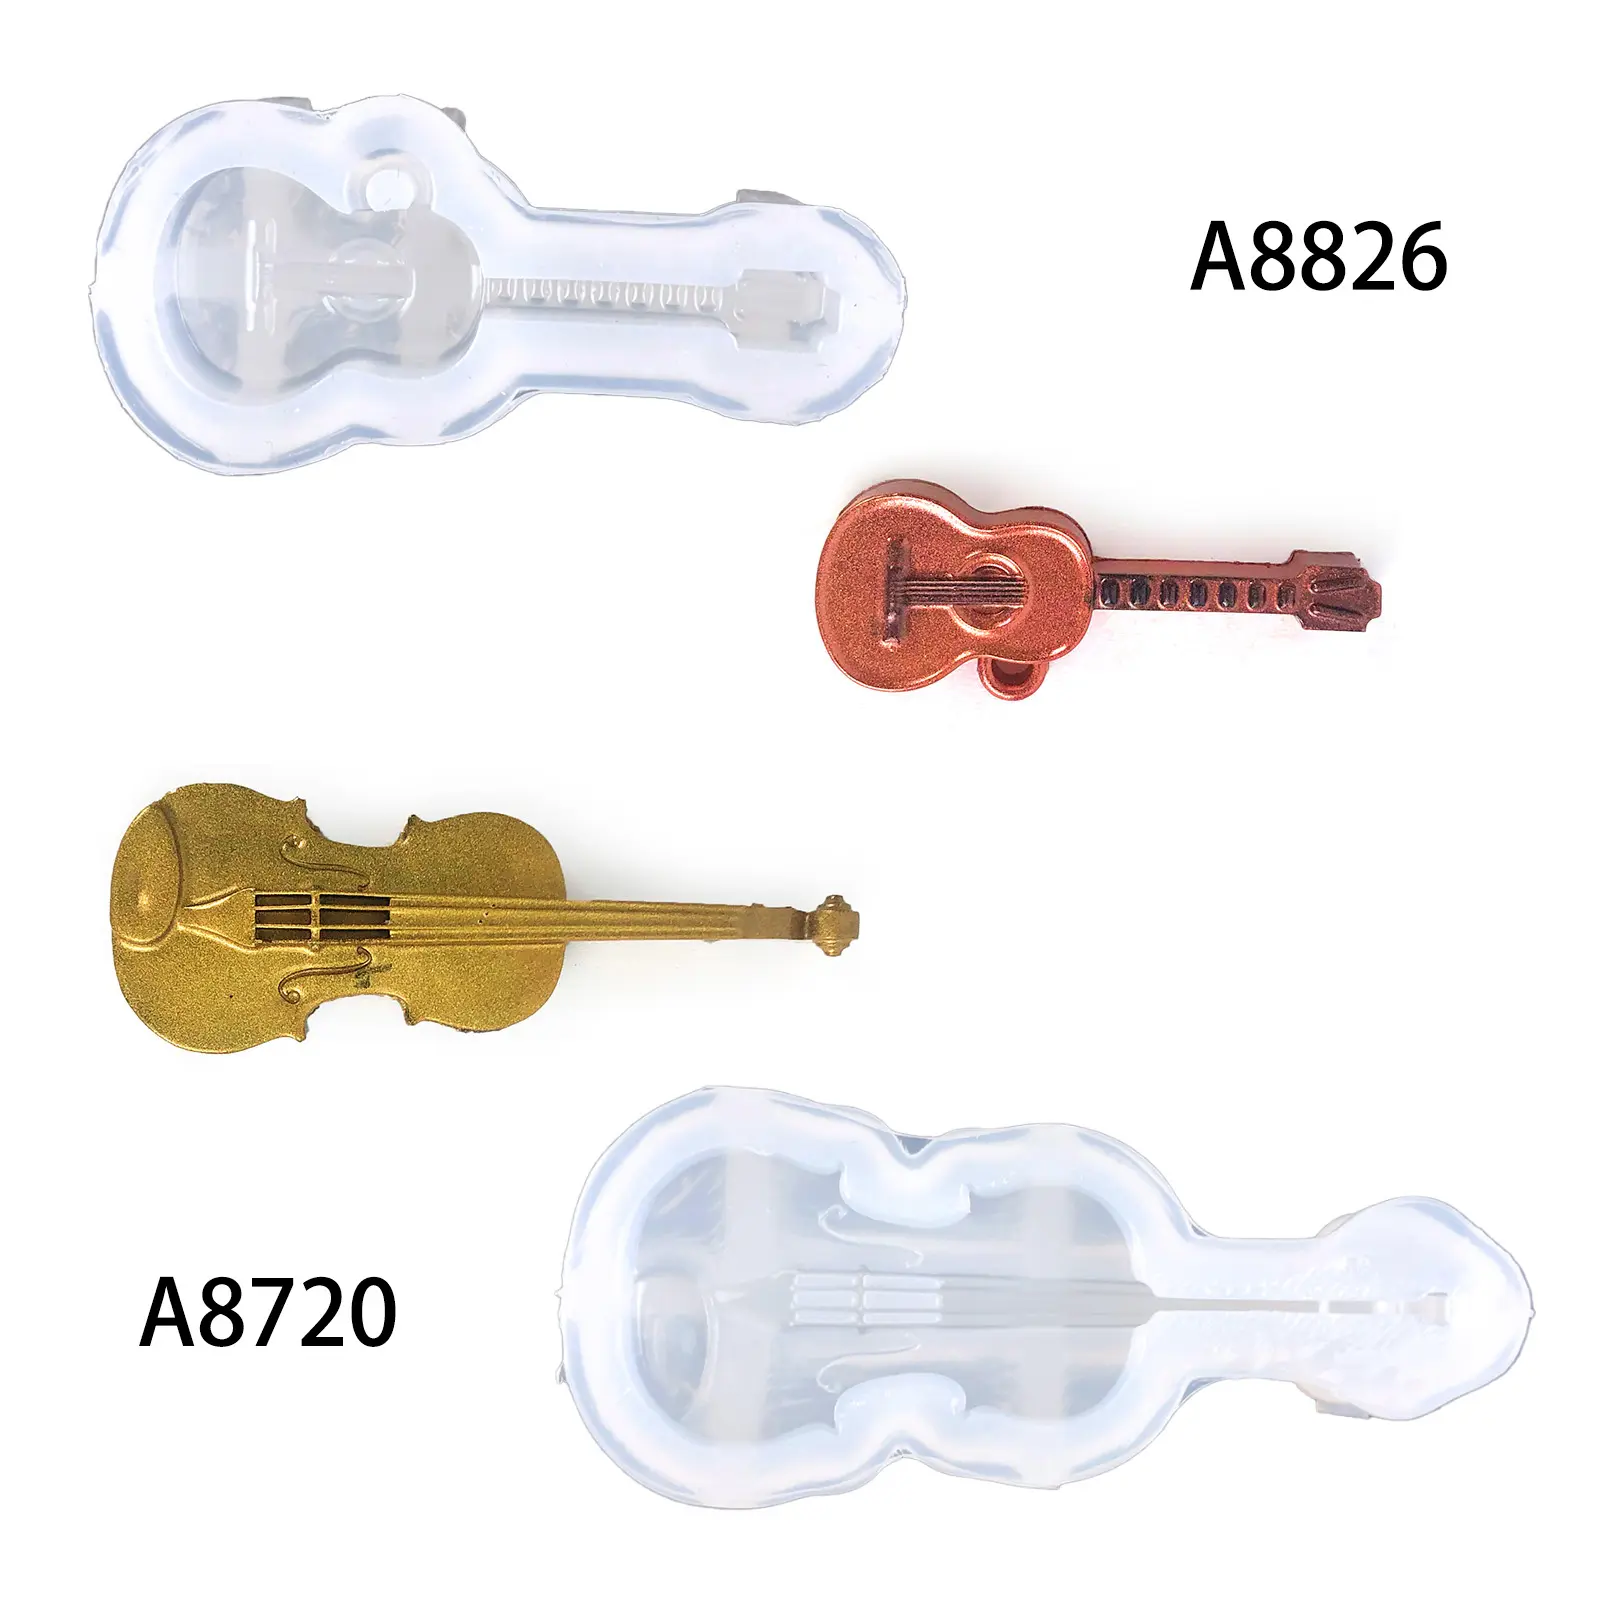 A8720 A8826 DIY Violino Guitarra Keychain Resina Silicone Moldes para Resina Fundição Colar Jóias Pingente Arte Artesanato Ornamentos